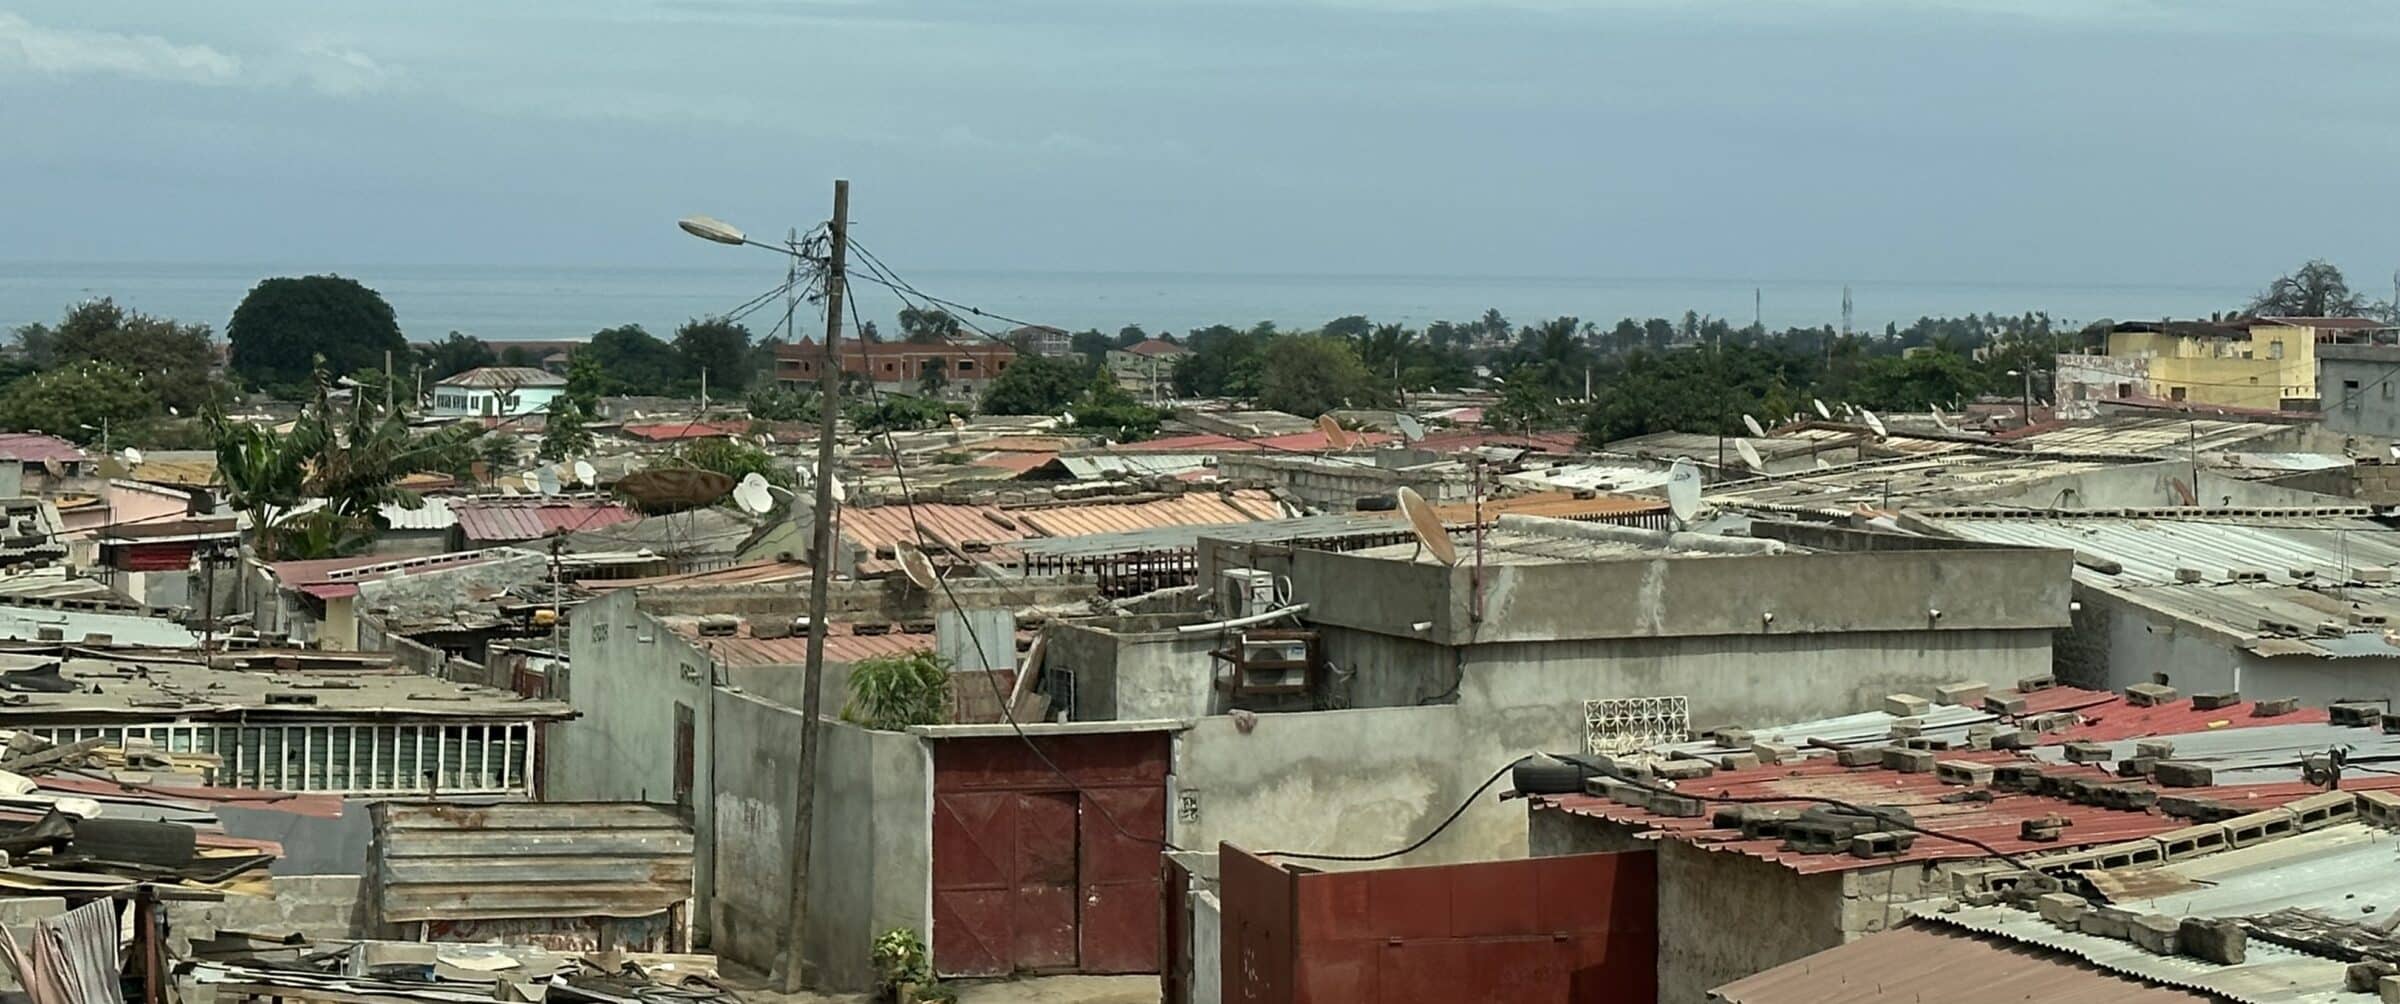 Även Luanda | Överlandning i Angola